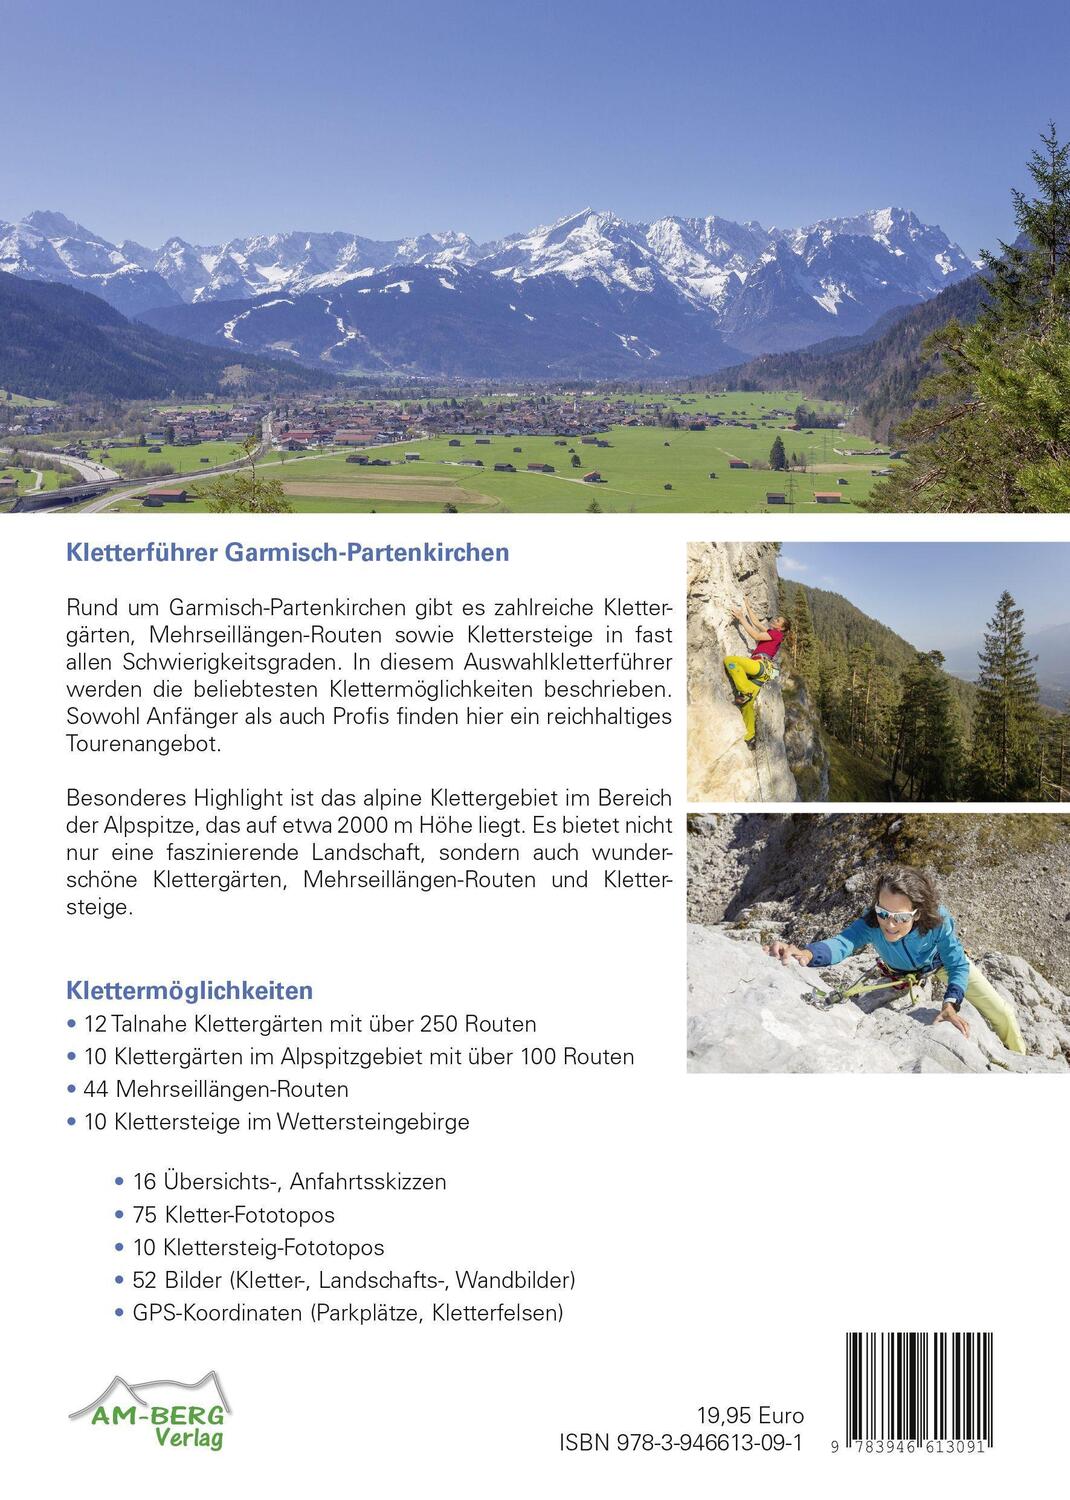 Bild: 9783946613091 | Kletterführer Garmisch-Partenkirchen | Günter Durner | Taschenbuch